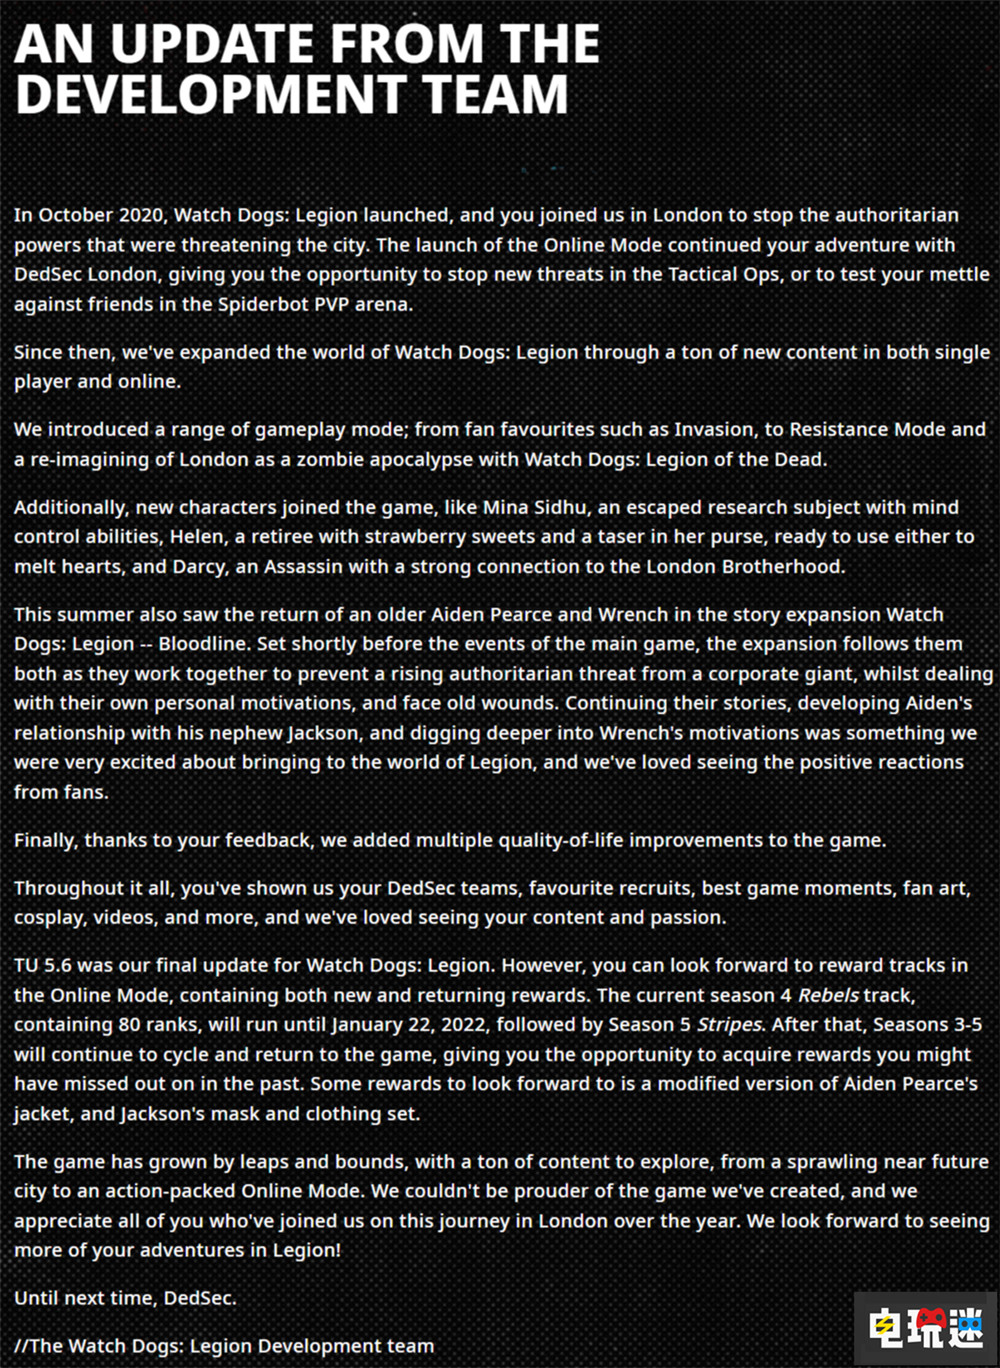 育碧宣布停止《看门狗：军团》更新 赛季内容将回滚循环  电玩迷资讯  第2张